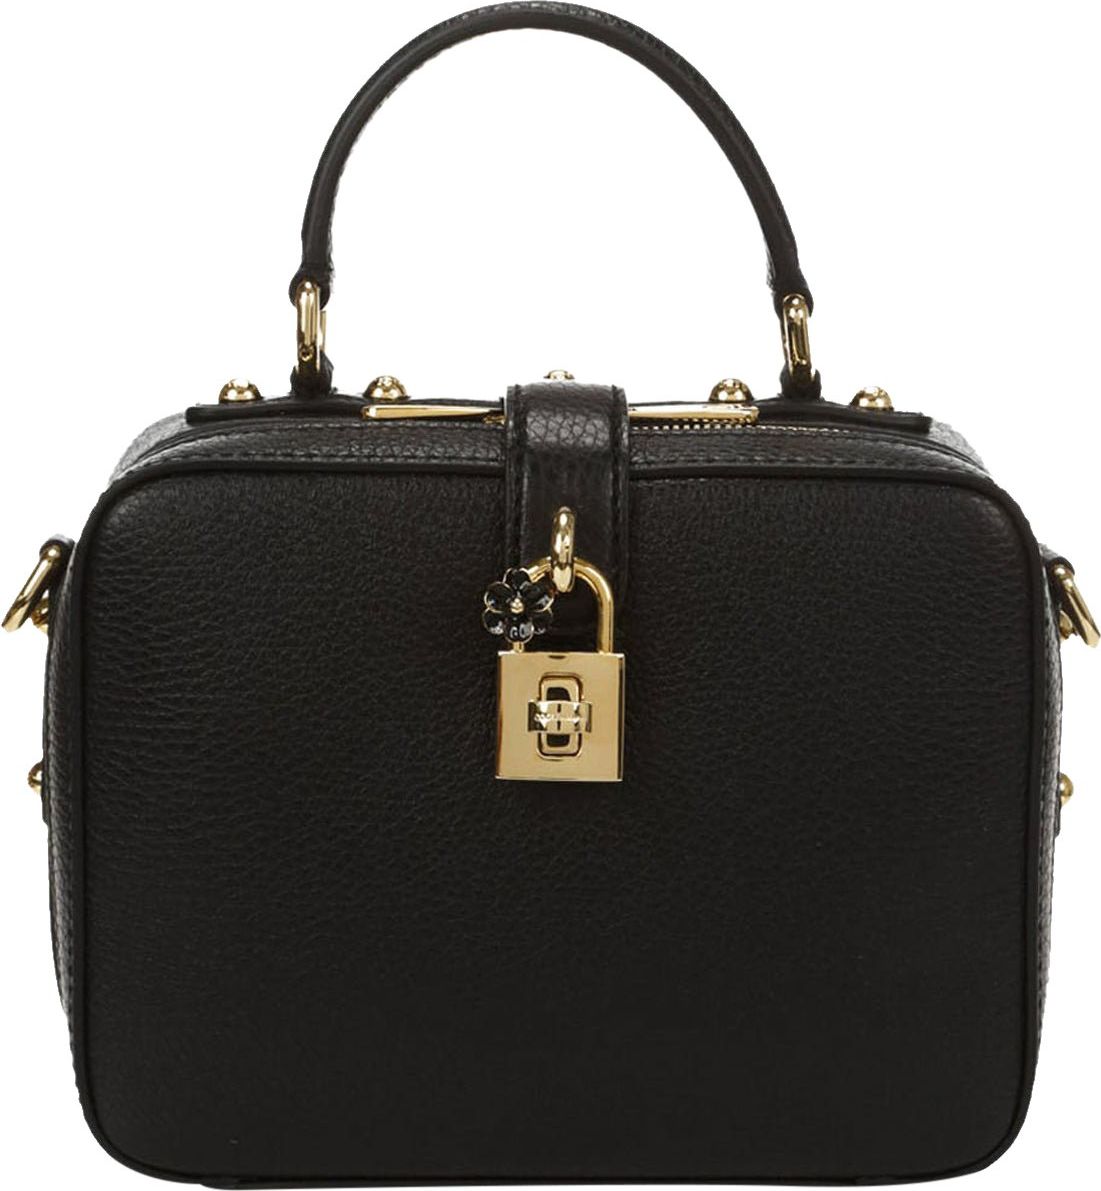 Dolce & Gabbana Dolce & Gabbana Leather Handbag Zwart